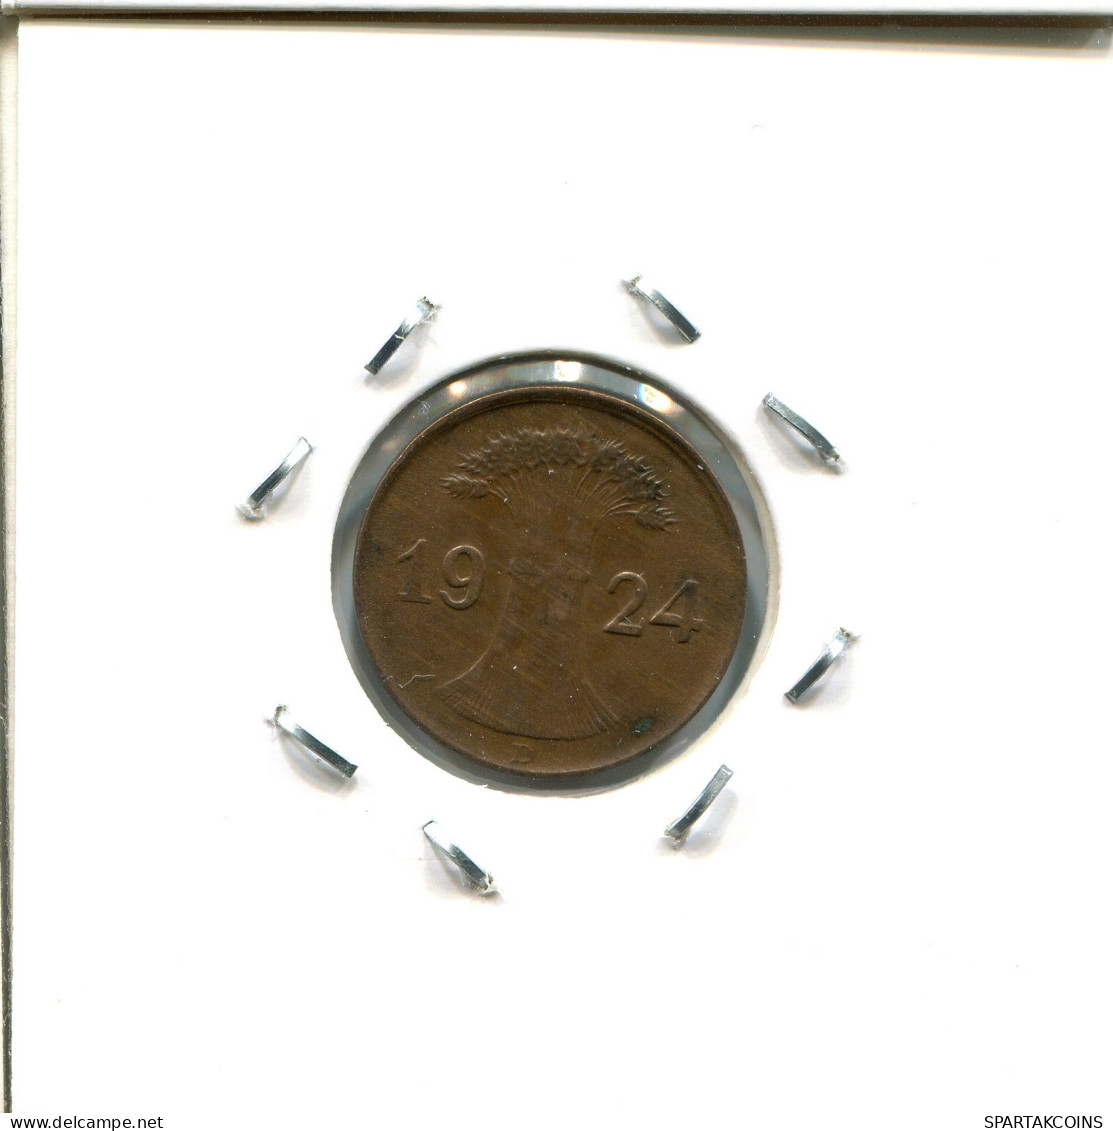 1 RENTENPFENNIG 1924 D ALEMANIA Moneda GERMANY #DA444.2.E - 1 Rentenpfennig & 1 Reichspfennig